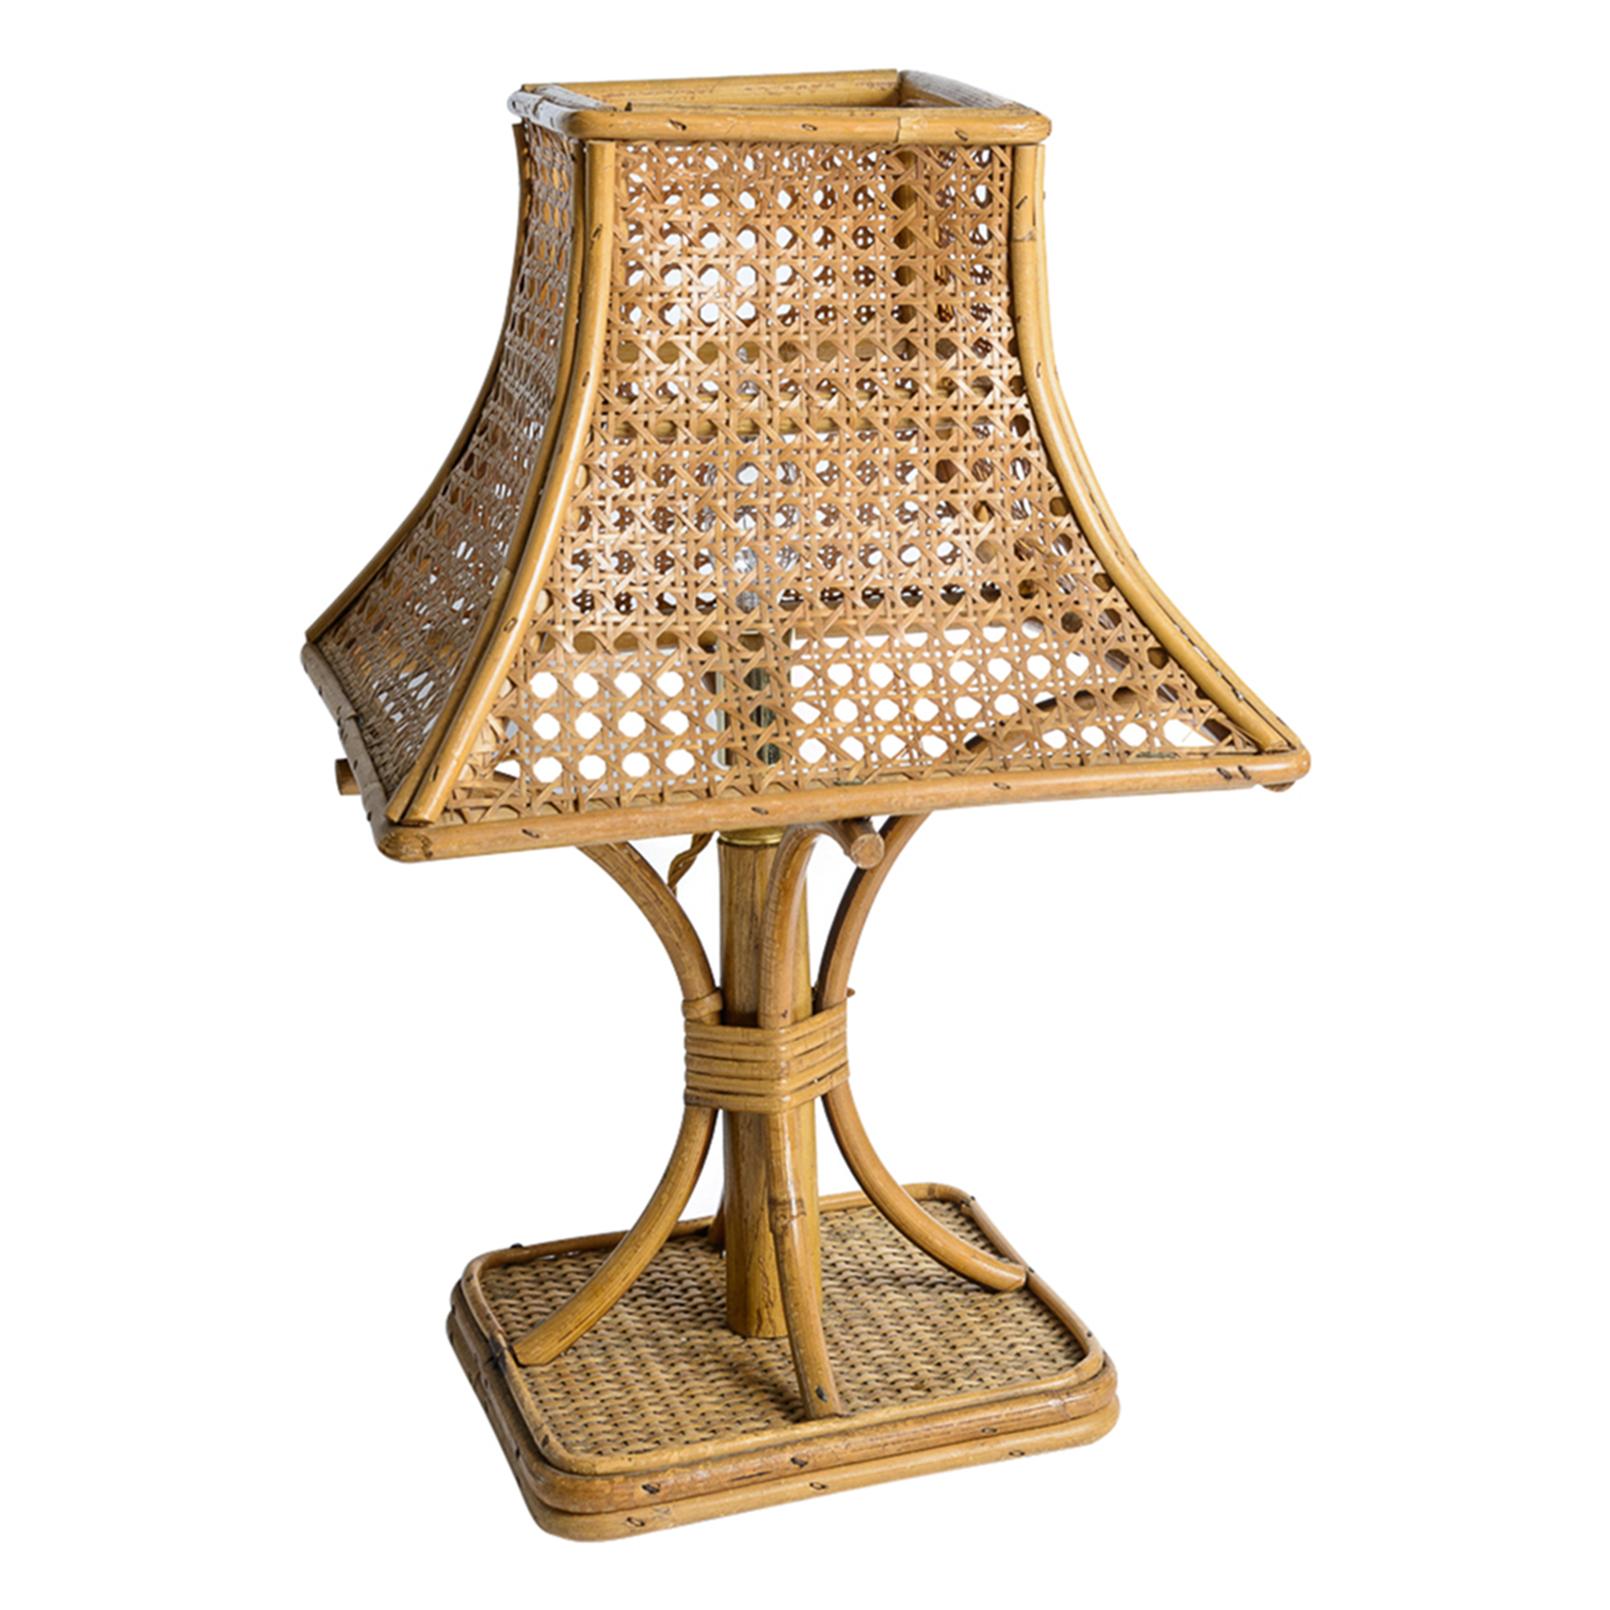 Tout comme cette petite lampe de table de la Côte d'Azur, années 1950
Fabriqué avec du bambou et du rotin (Rotin en français) et avec cette merveilleuse paille de Vienne pour l'ombre.
Très délicat et tout à fait charmant.
Récemment refait aux normes